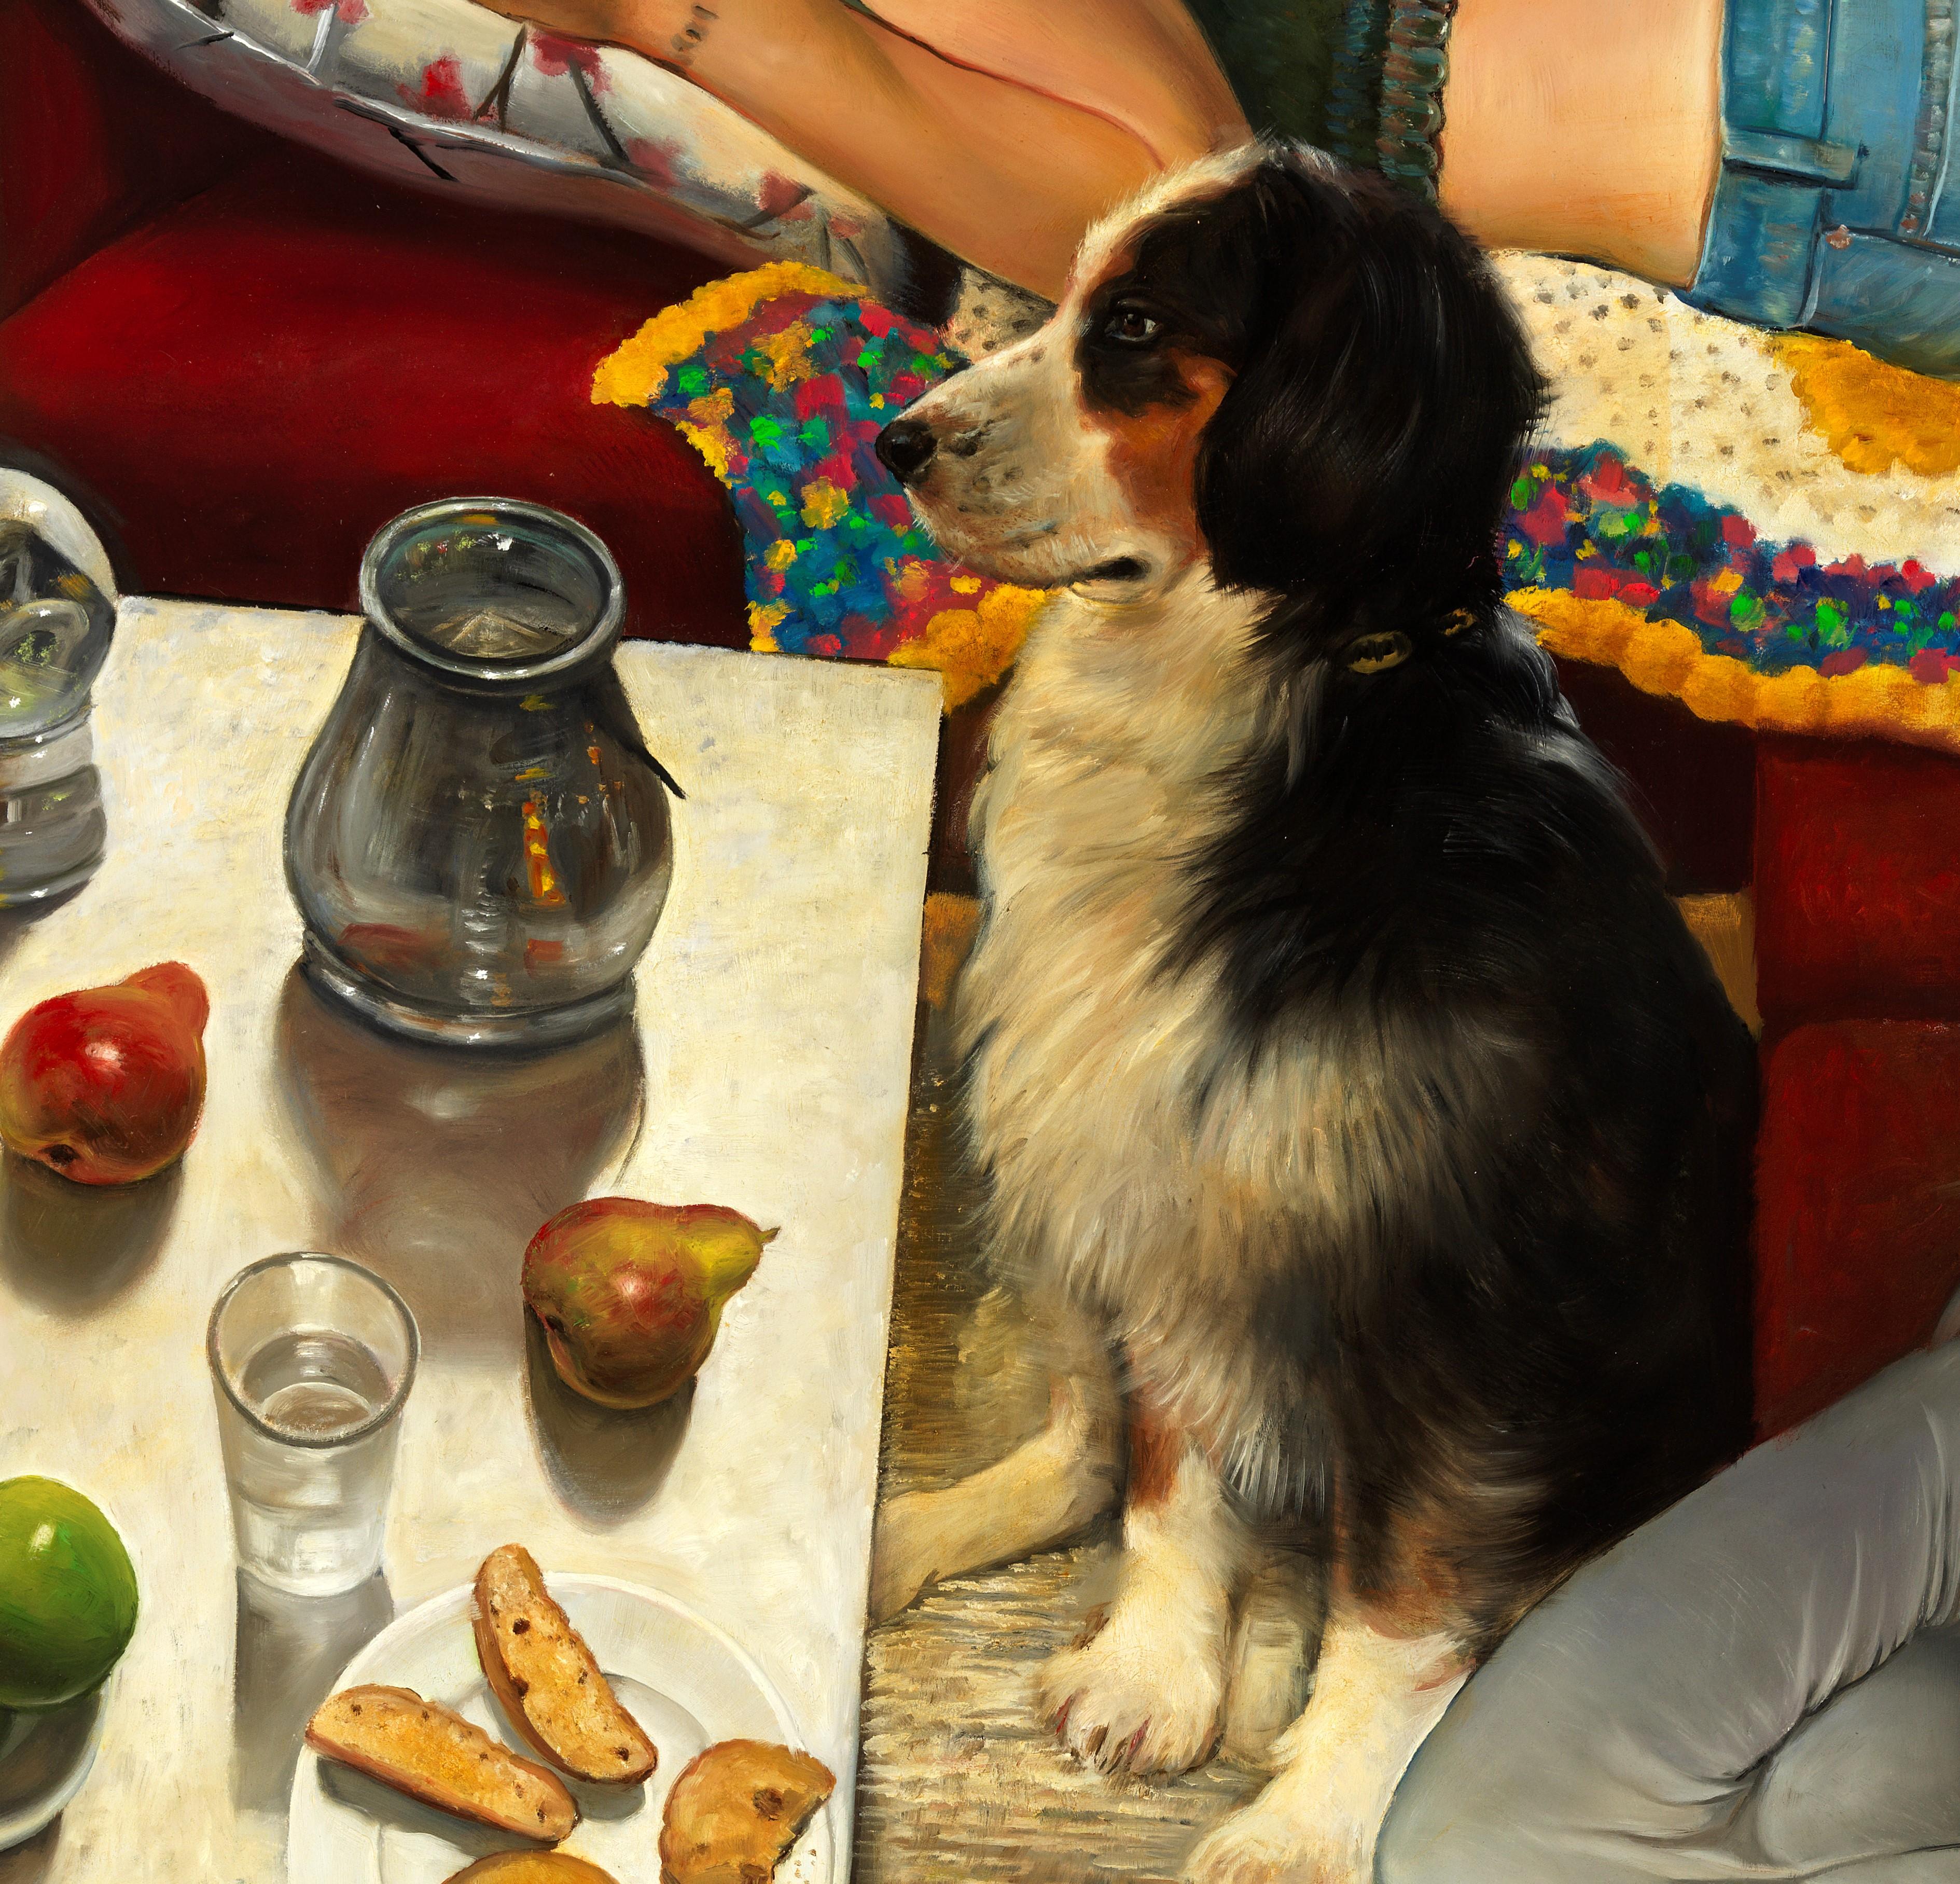  Bliss intérieur, trois femmes et un chien, scène d'intérieur, couleurs vives Huile sur toile - Contemporain Painting par Bruno Surdo